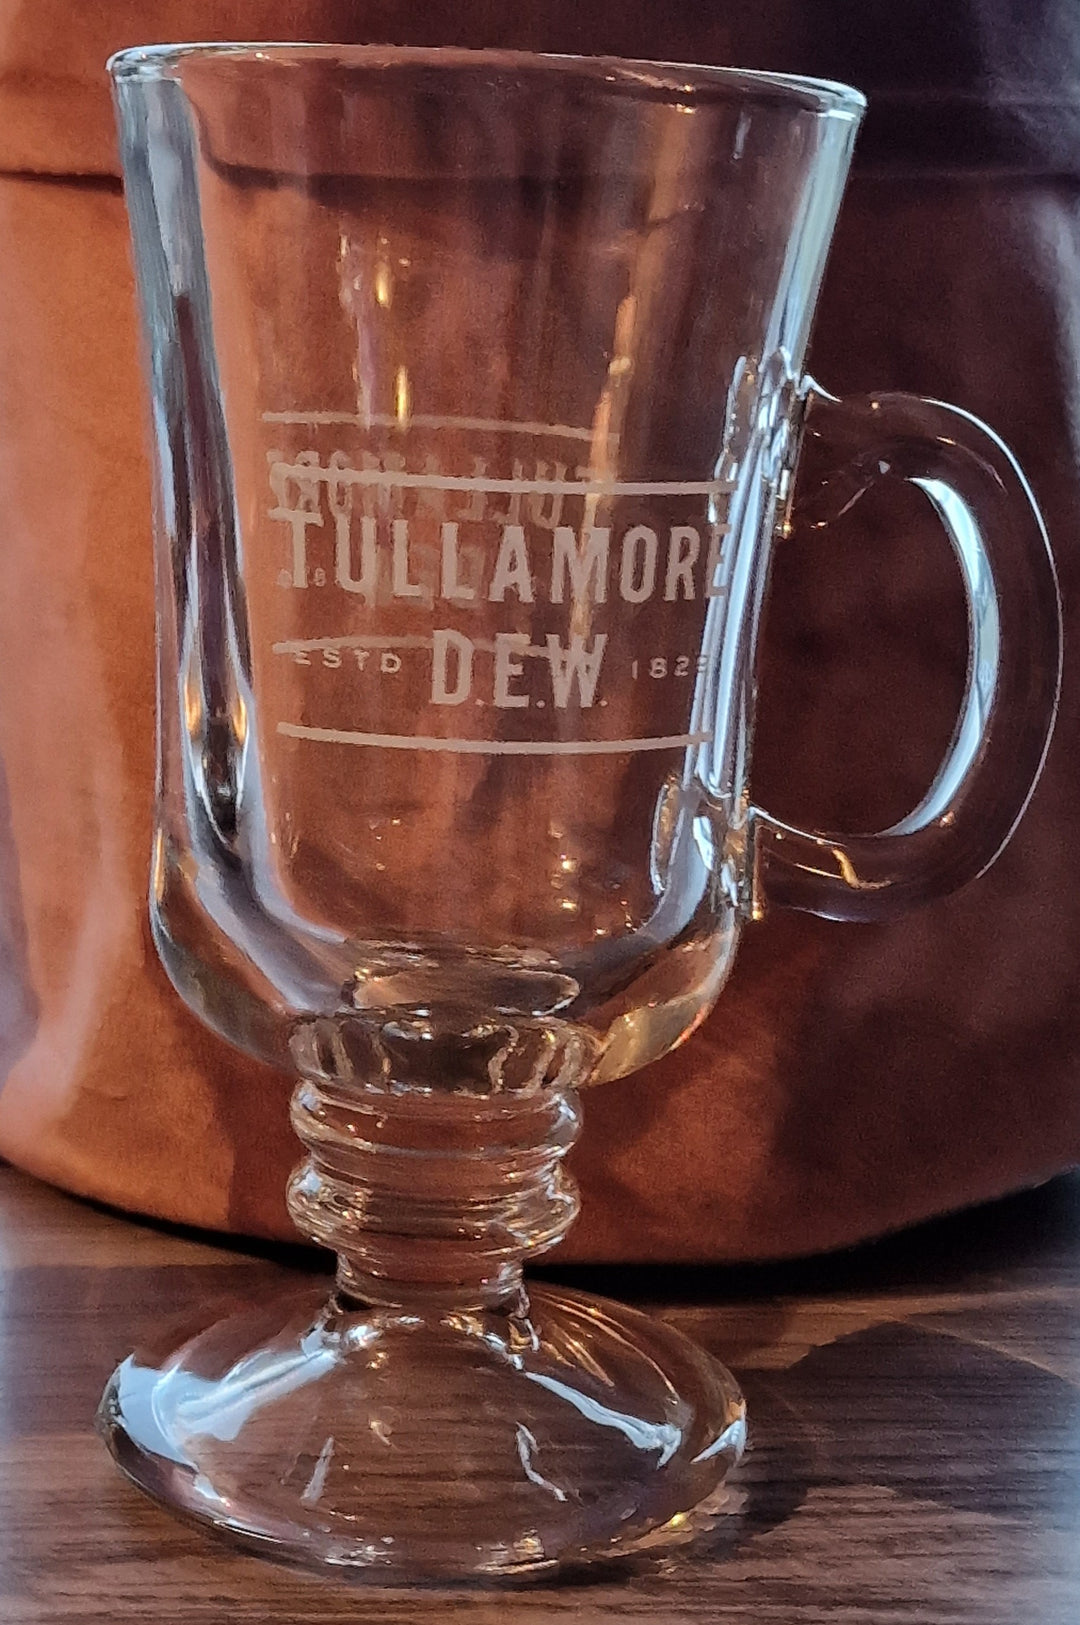  Irish Coffee Glas von Tullamore Dew